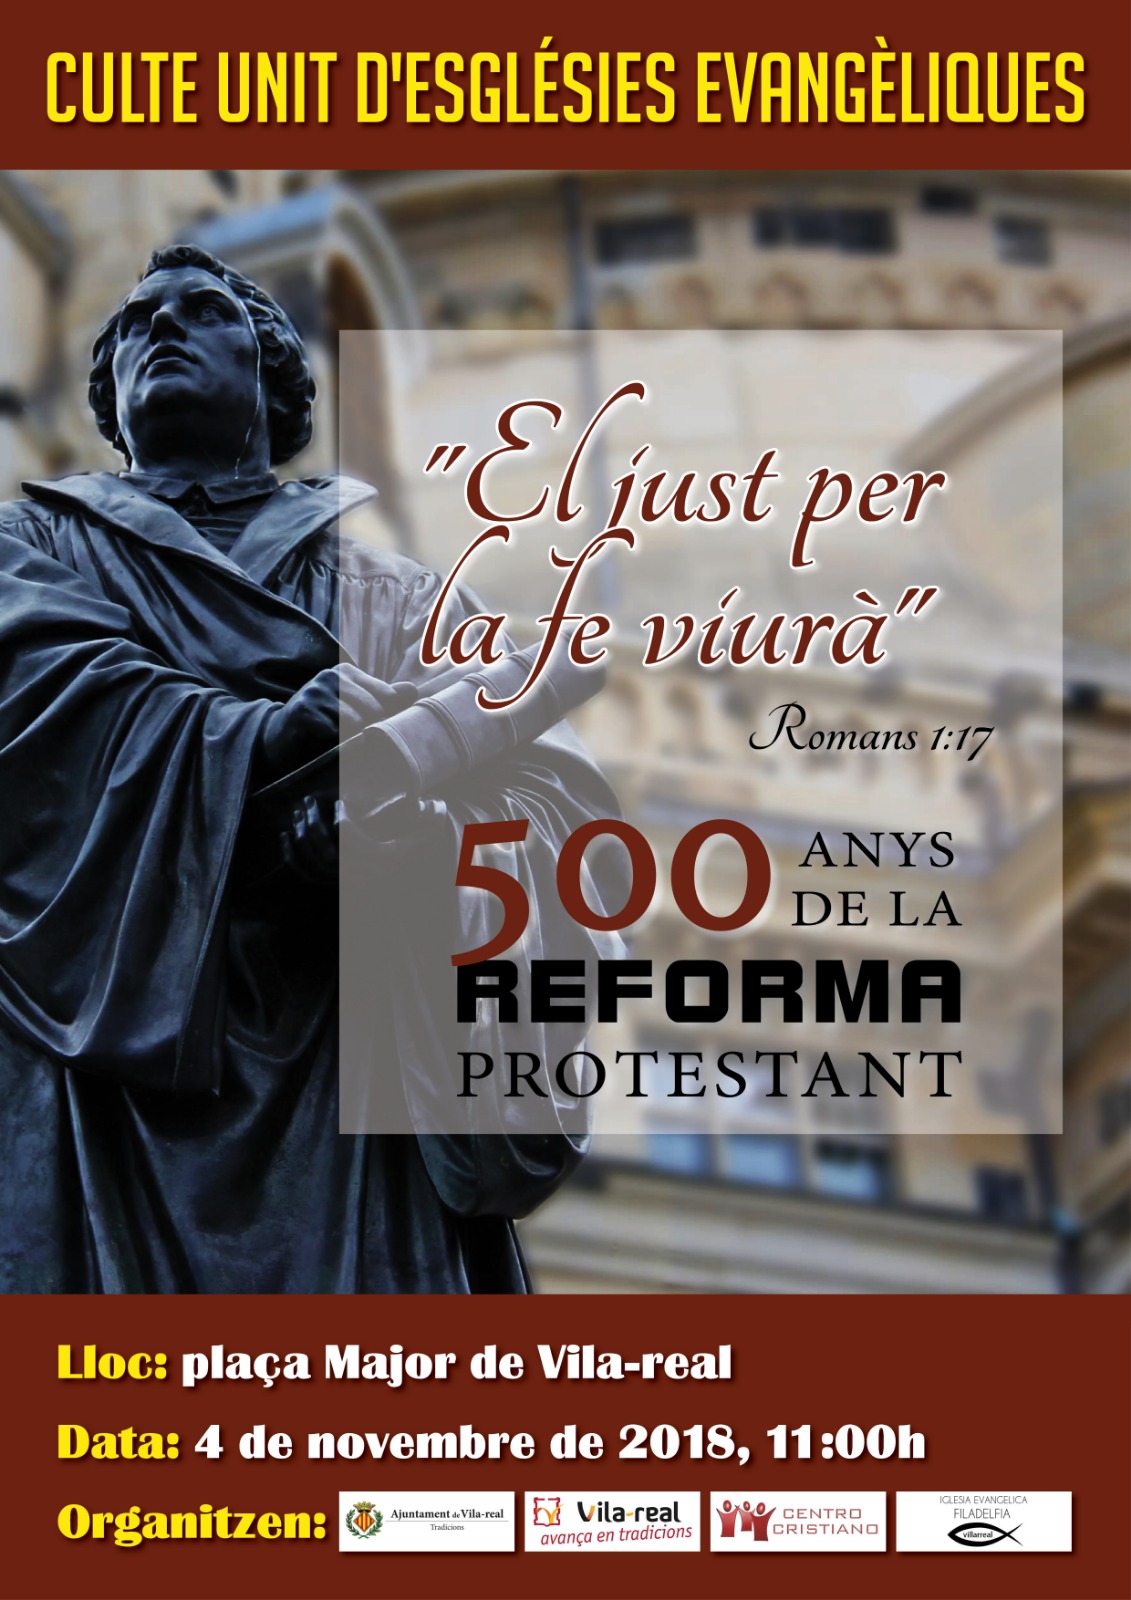 "El just per la fe viurà" - 500 anys de la reforma protestant